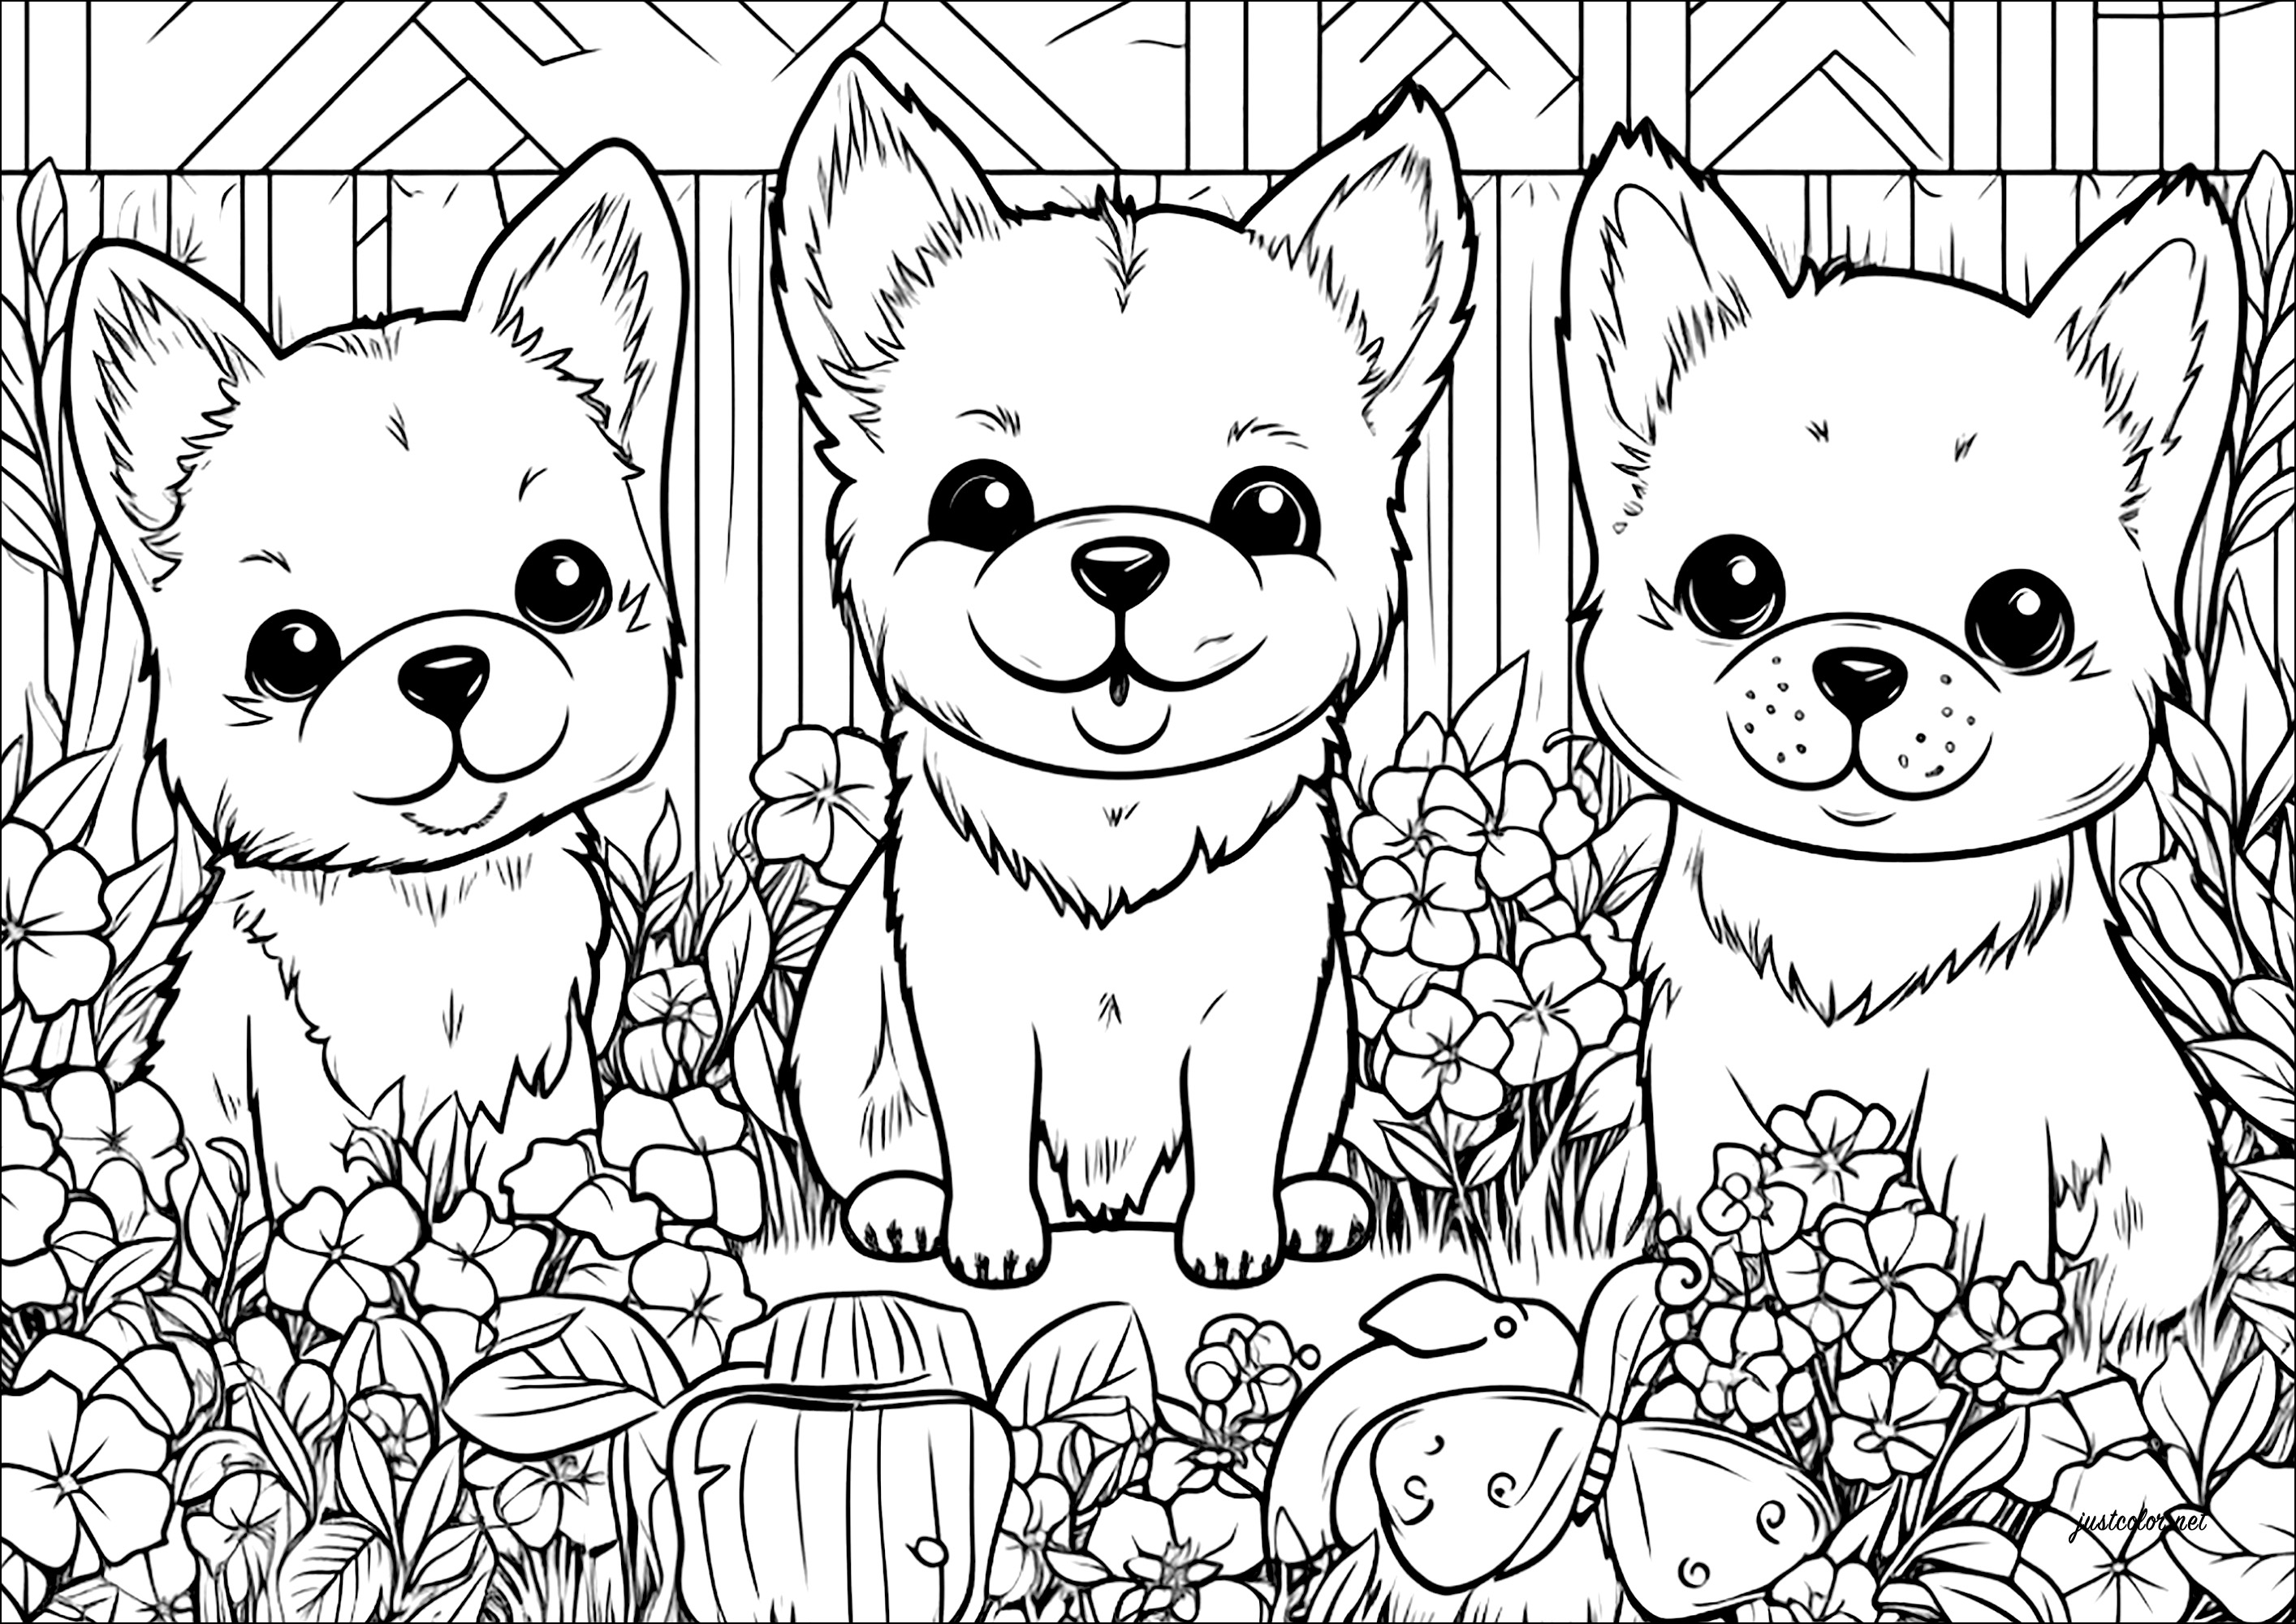 Tres perritos en un jardín de flores. Una bonita página para colorear, con muchos detalles sobre las flores y la vegetación del jardín.